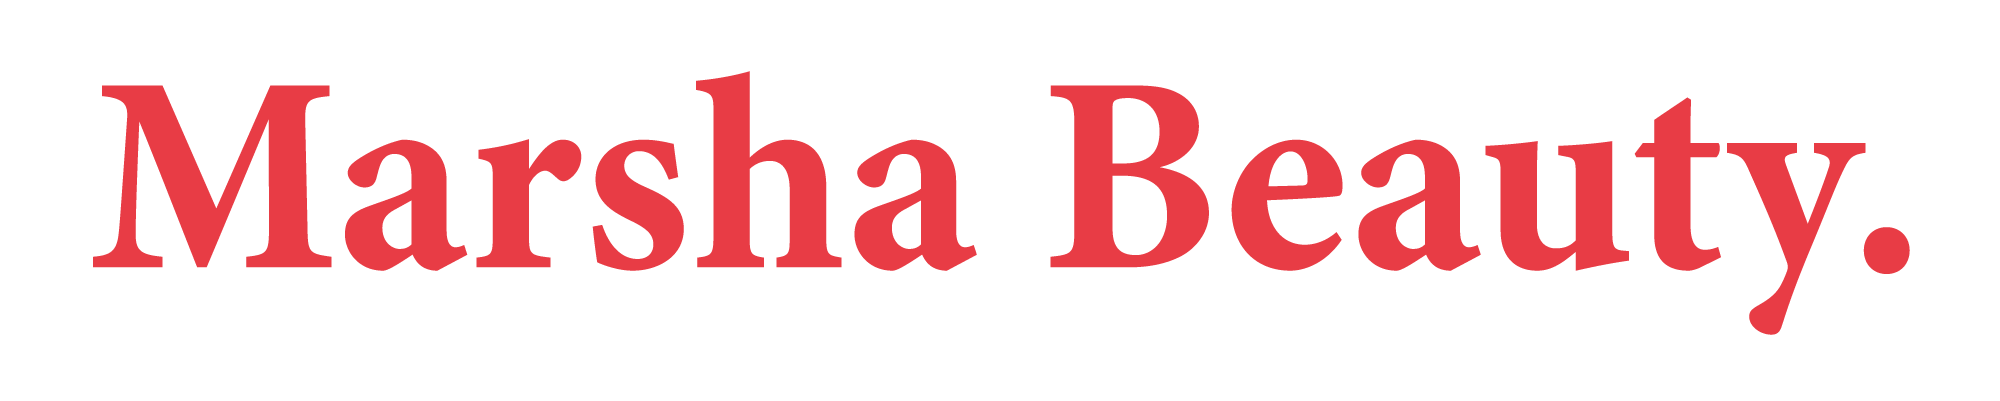 marshabeauty-logo